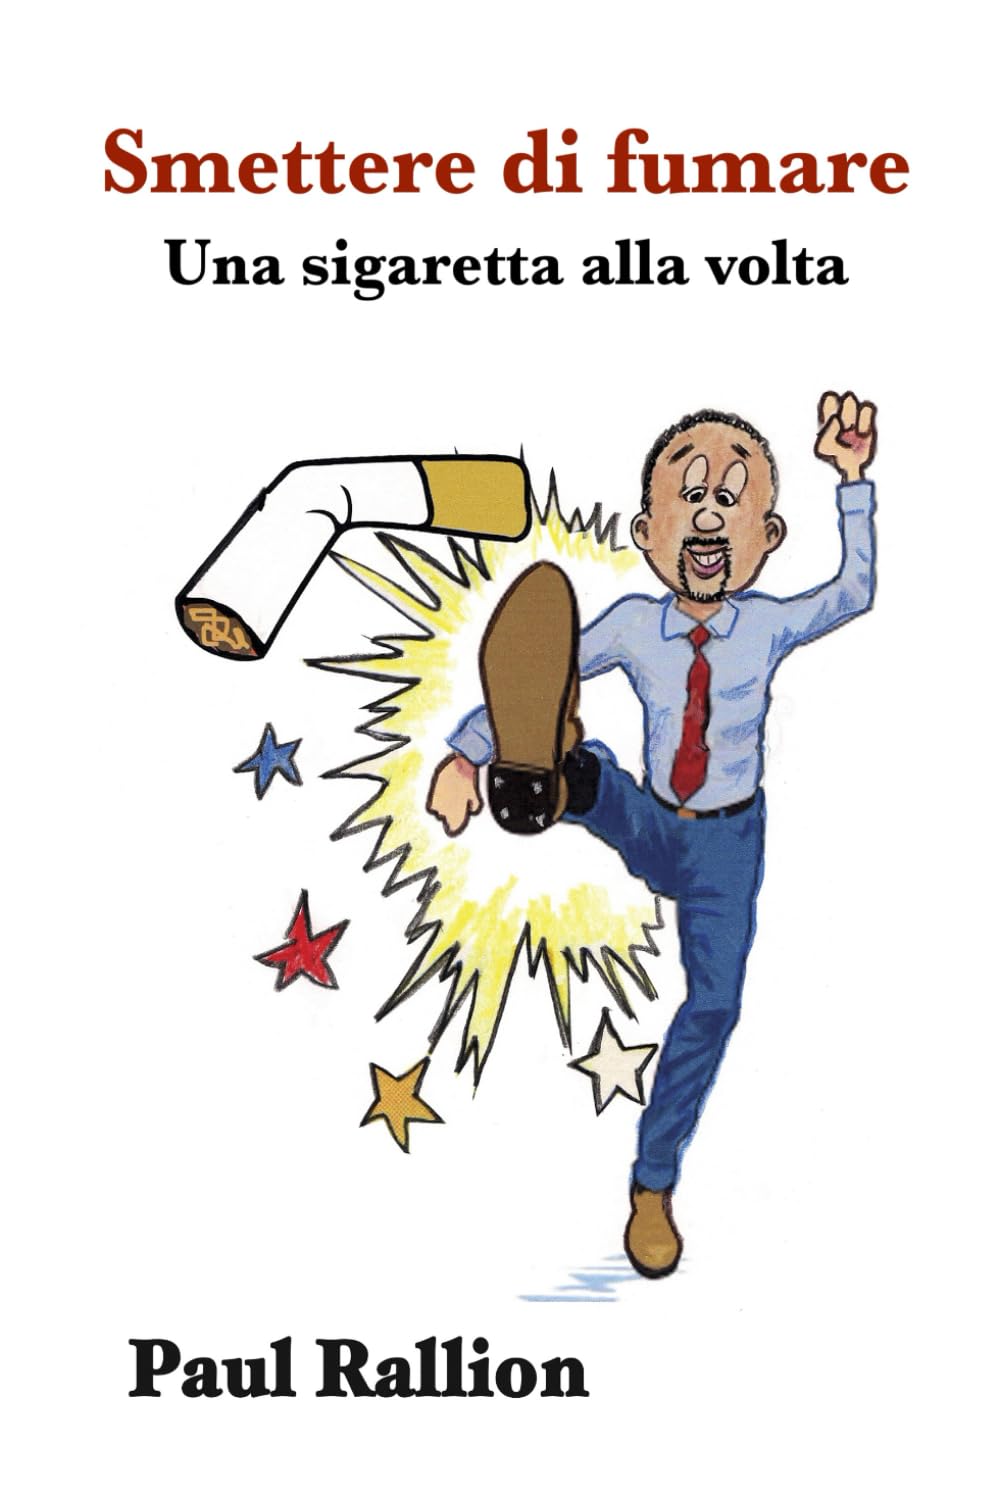 Smettere di fumare: Una sigaretta alla volta (Italian Edition)